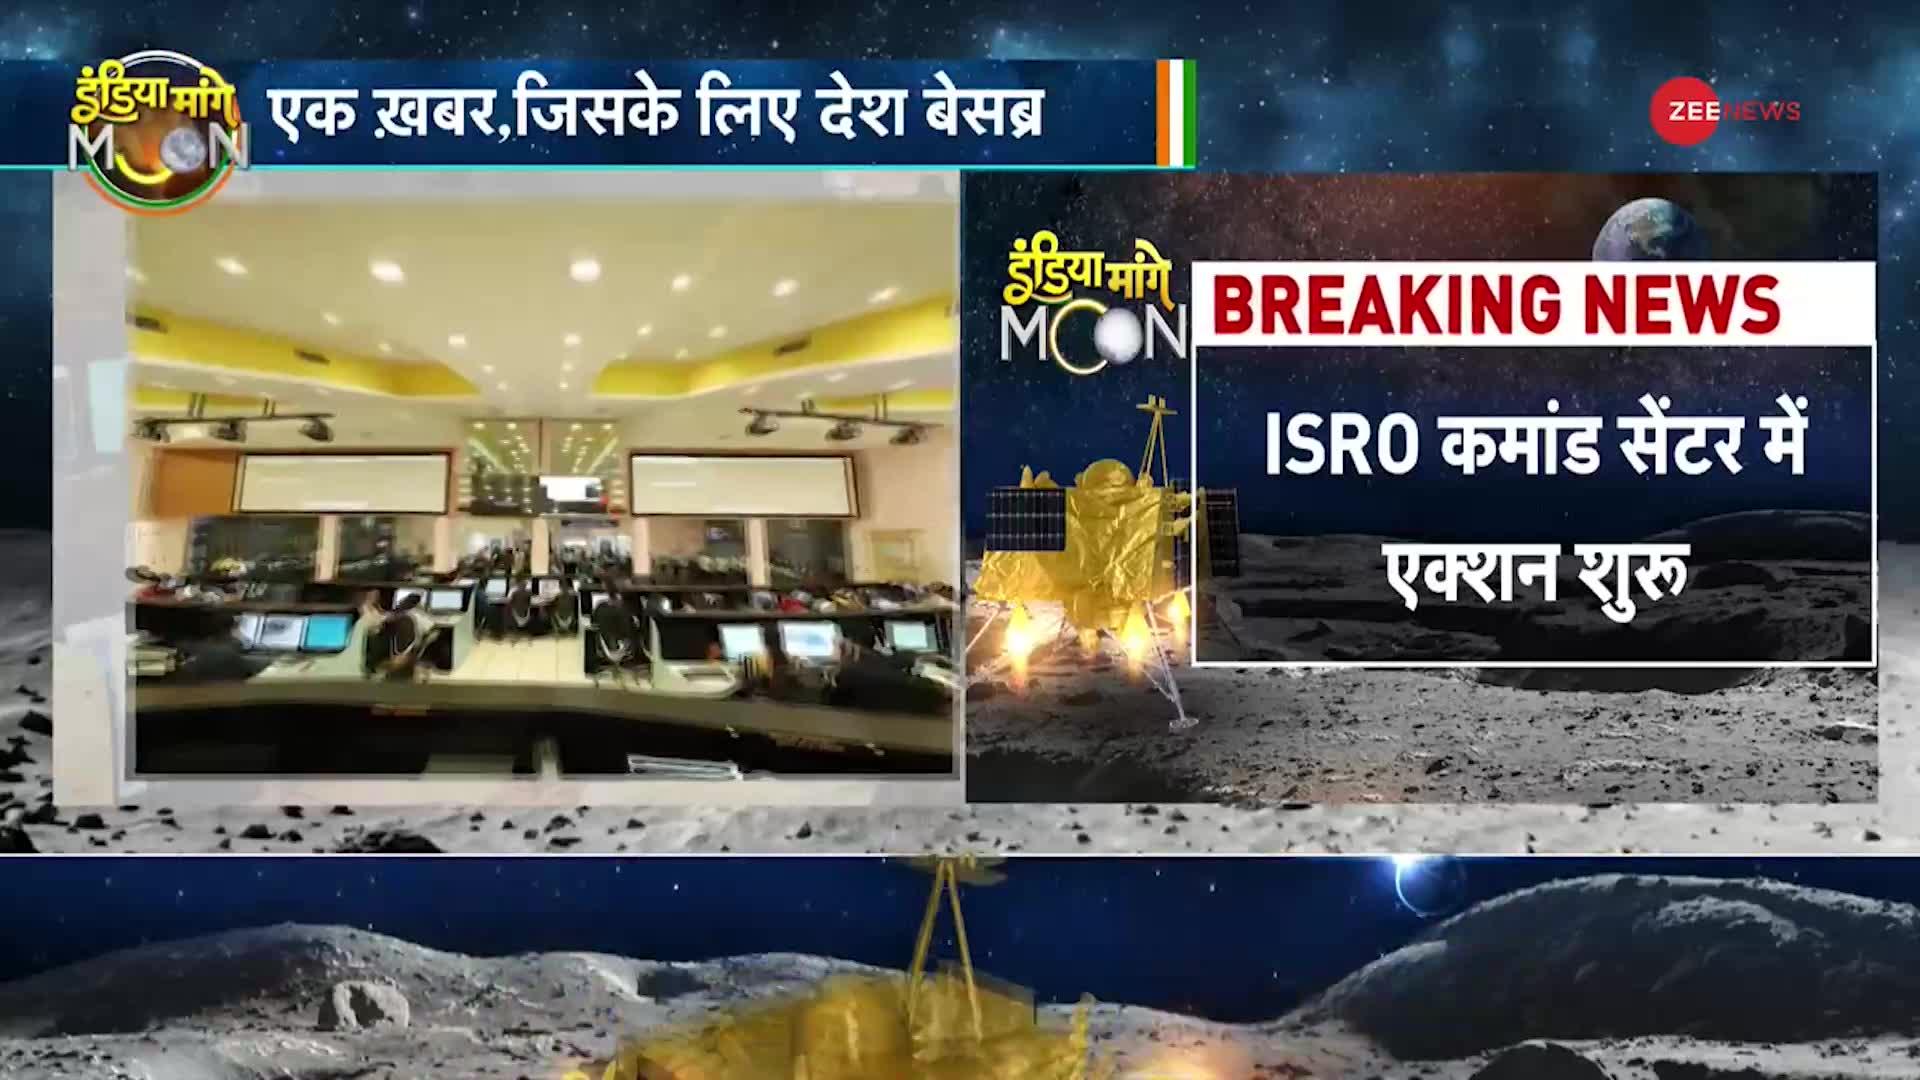 Chandrayaan Update: चंद्रयान लैंडिंग की कमांड हुई शुरू, ISRO कमांड सेंटर से की जा रही है मॉनिटरिंग